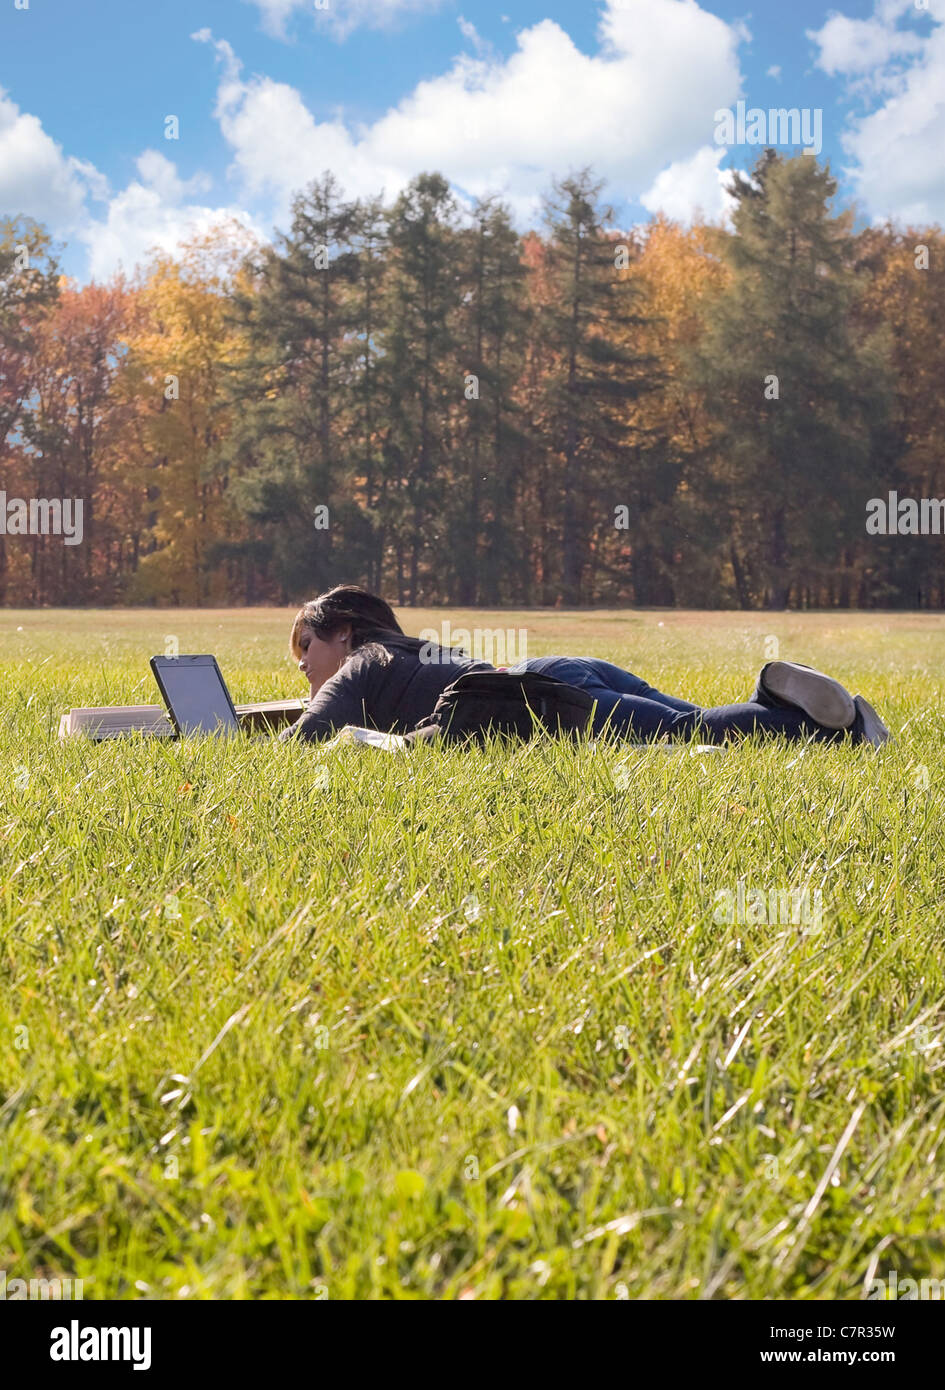 Un jeune étudiant en utilisant son ordinateur portable tout en jetant dans un champ d'herbe verte. Banque D'Images